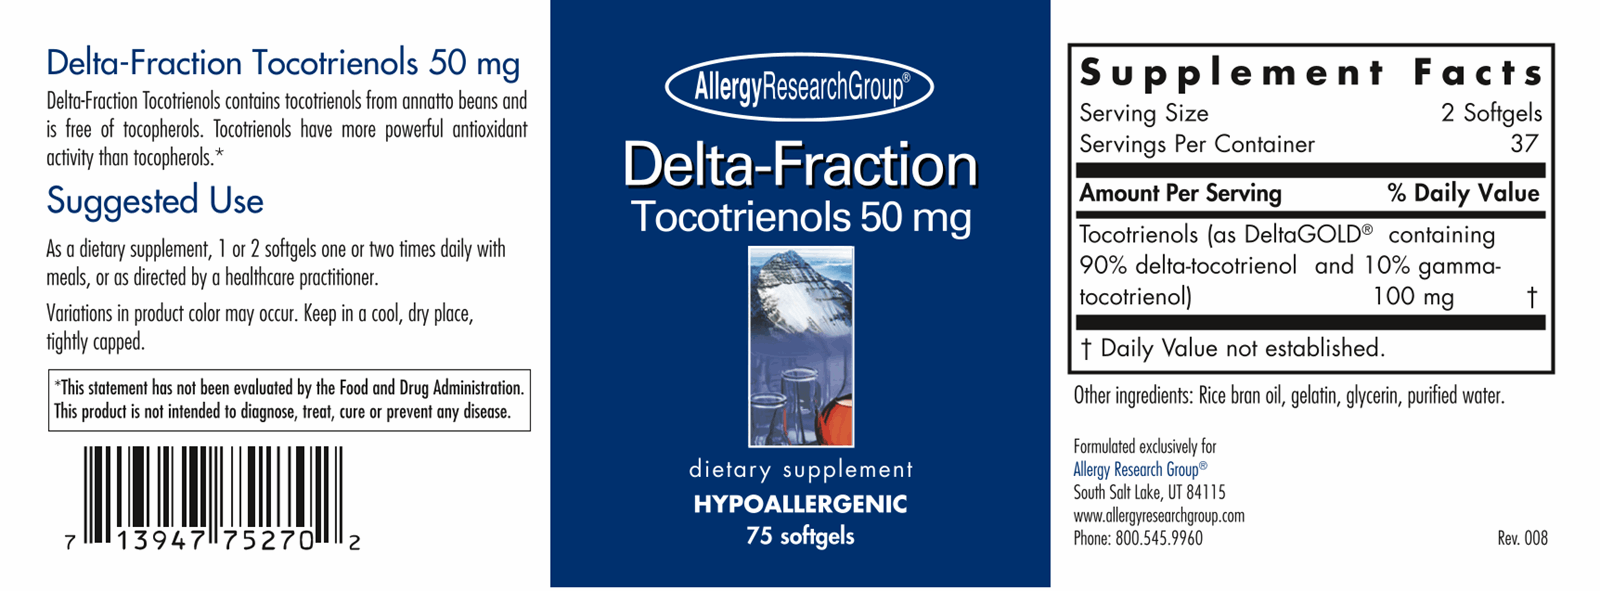 Delta-Fraction Tocotrienols 50mg 